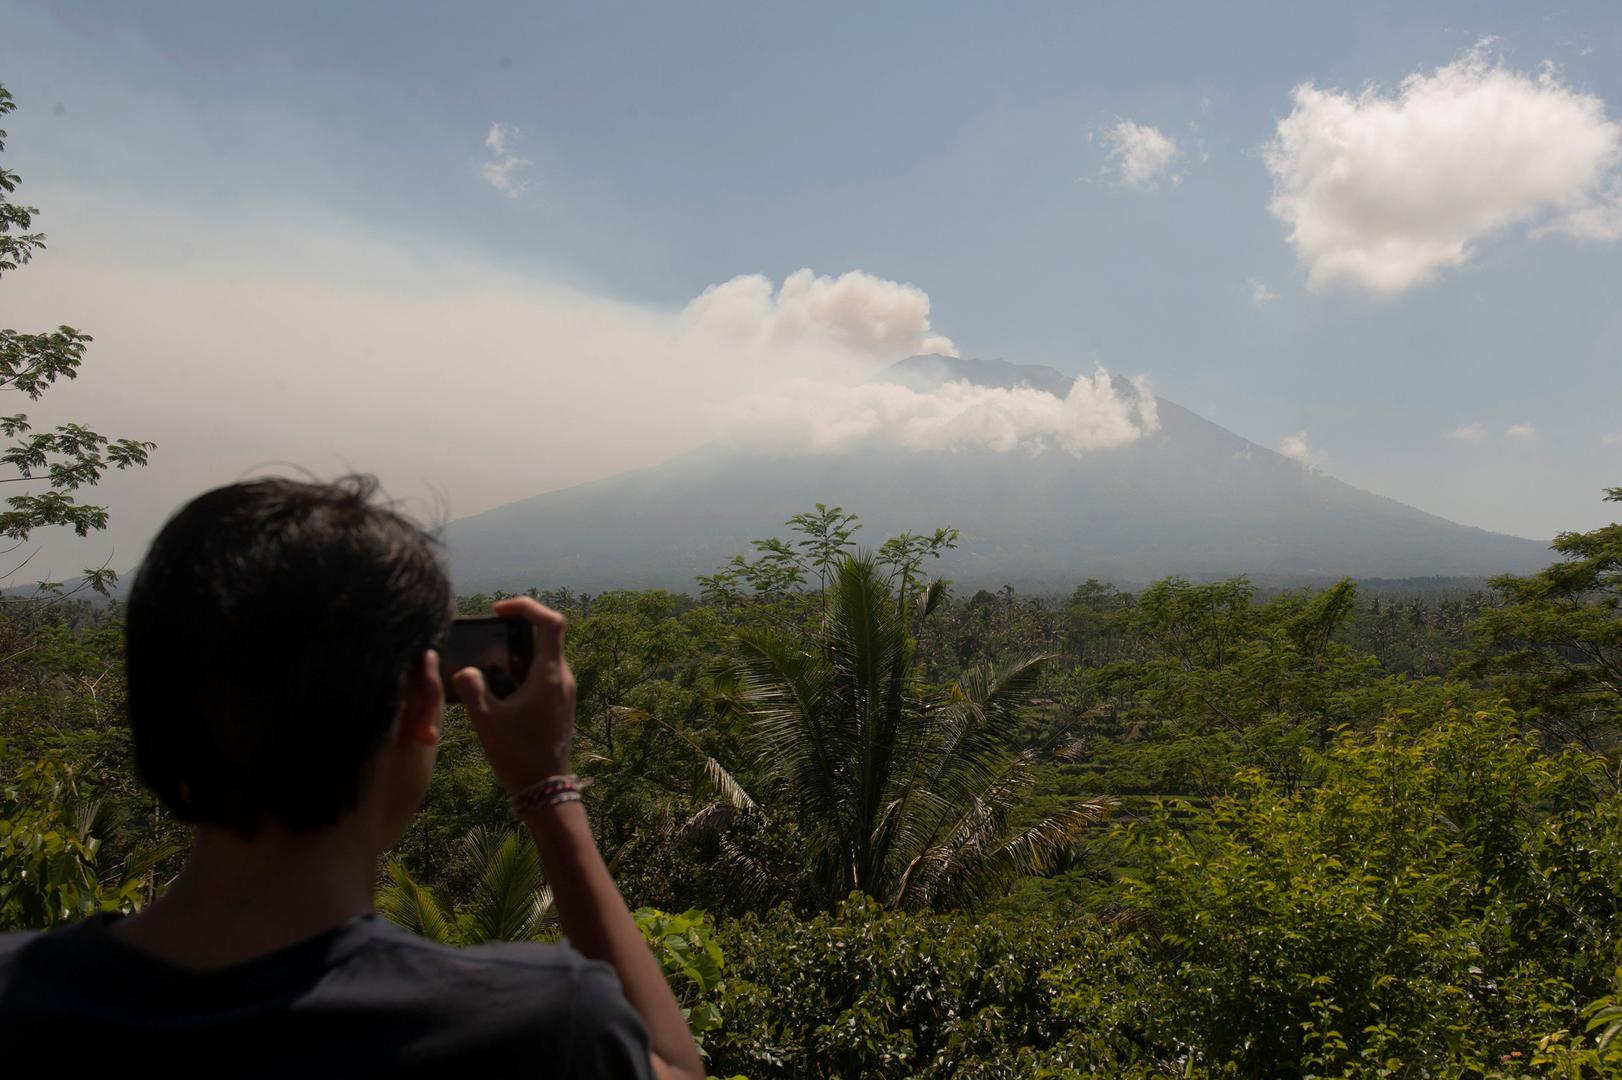 Prethodna erupcija vulkana Agung zabilježena je 1963. godine. Vulkan je izbacio pepeo do Džakarte, udaljene oko 1000 kilometara. U nekoliko erupcija bilo je tada gotovo 1600 mrtvih.